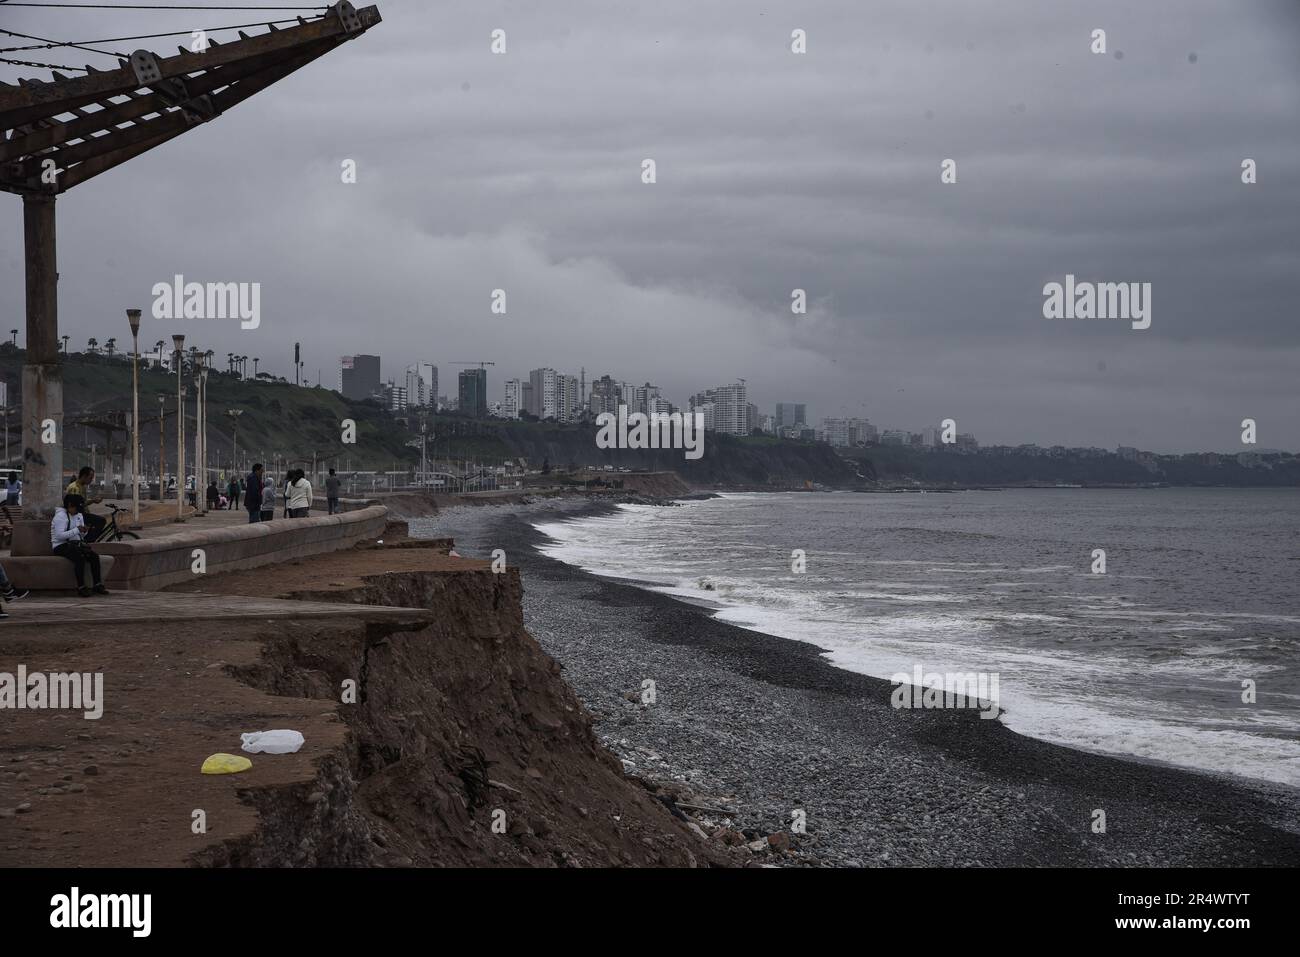 Nicolas Remene / le Pictorium - fenomeno El Nino sulla costa settentrionale del Perù - 7/10/2018 - Perù / Lima / Lima - Magdalena del Mar, una zona balneare nella provincia di Lima in Perù, il 7 ottobre 2018. Il lavoro di sviluppo urbano sta cercando di guadagnare un po' sulla costa della capitale peruviana. Lima, come molte città costiere e villaggi del nord deve affrontare regolarmente i rischi climatici causati dalla periodica alternanza dei fenomeni di El Nino e la Nina. ------------------------------------------ Il fenomeno El Nino sulla costa settentrionale del Perù a nord di Foto Stock